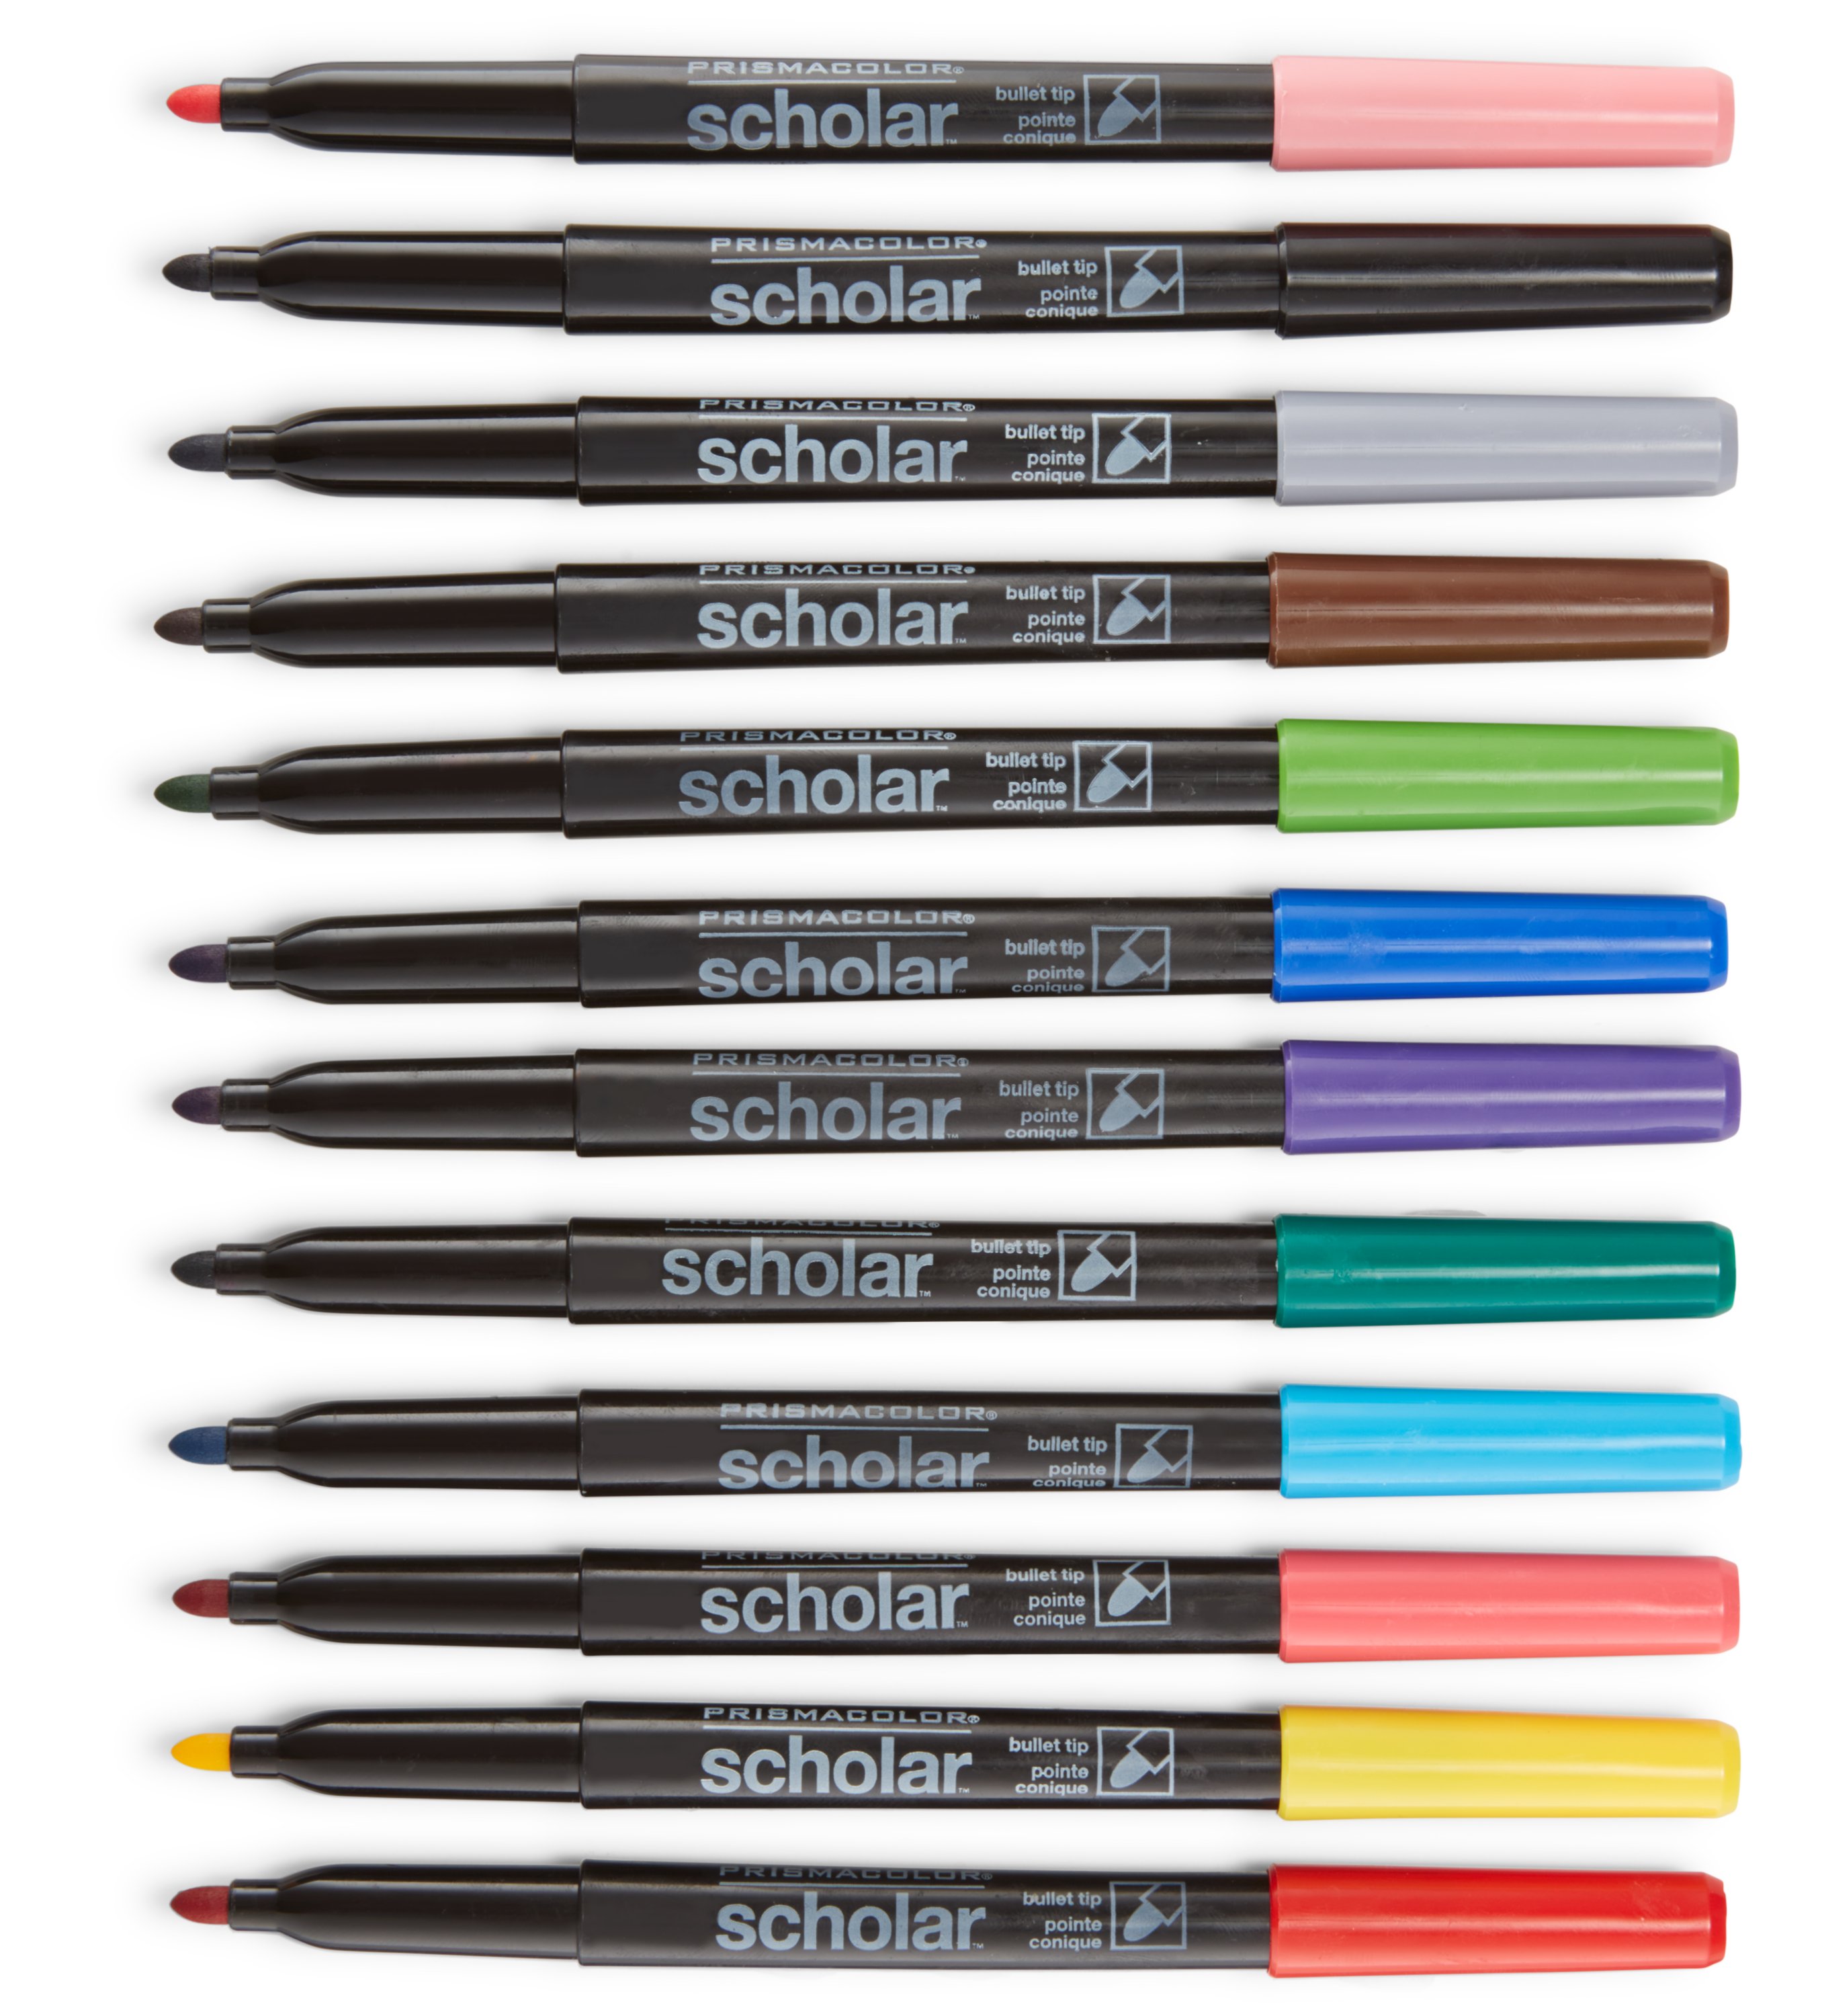 prismacolor pens